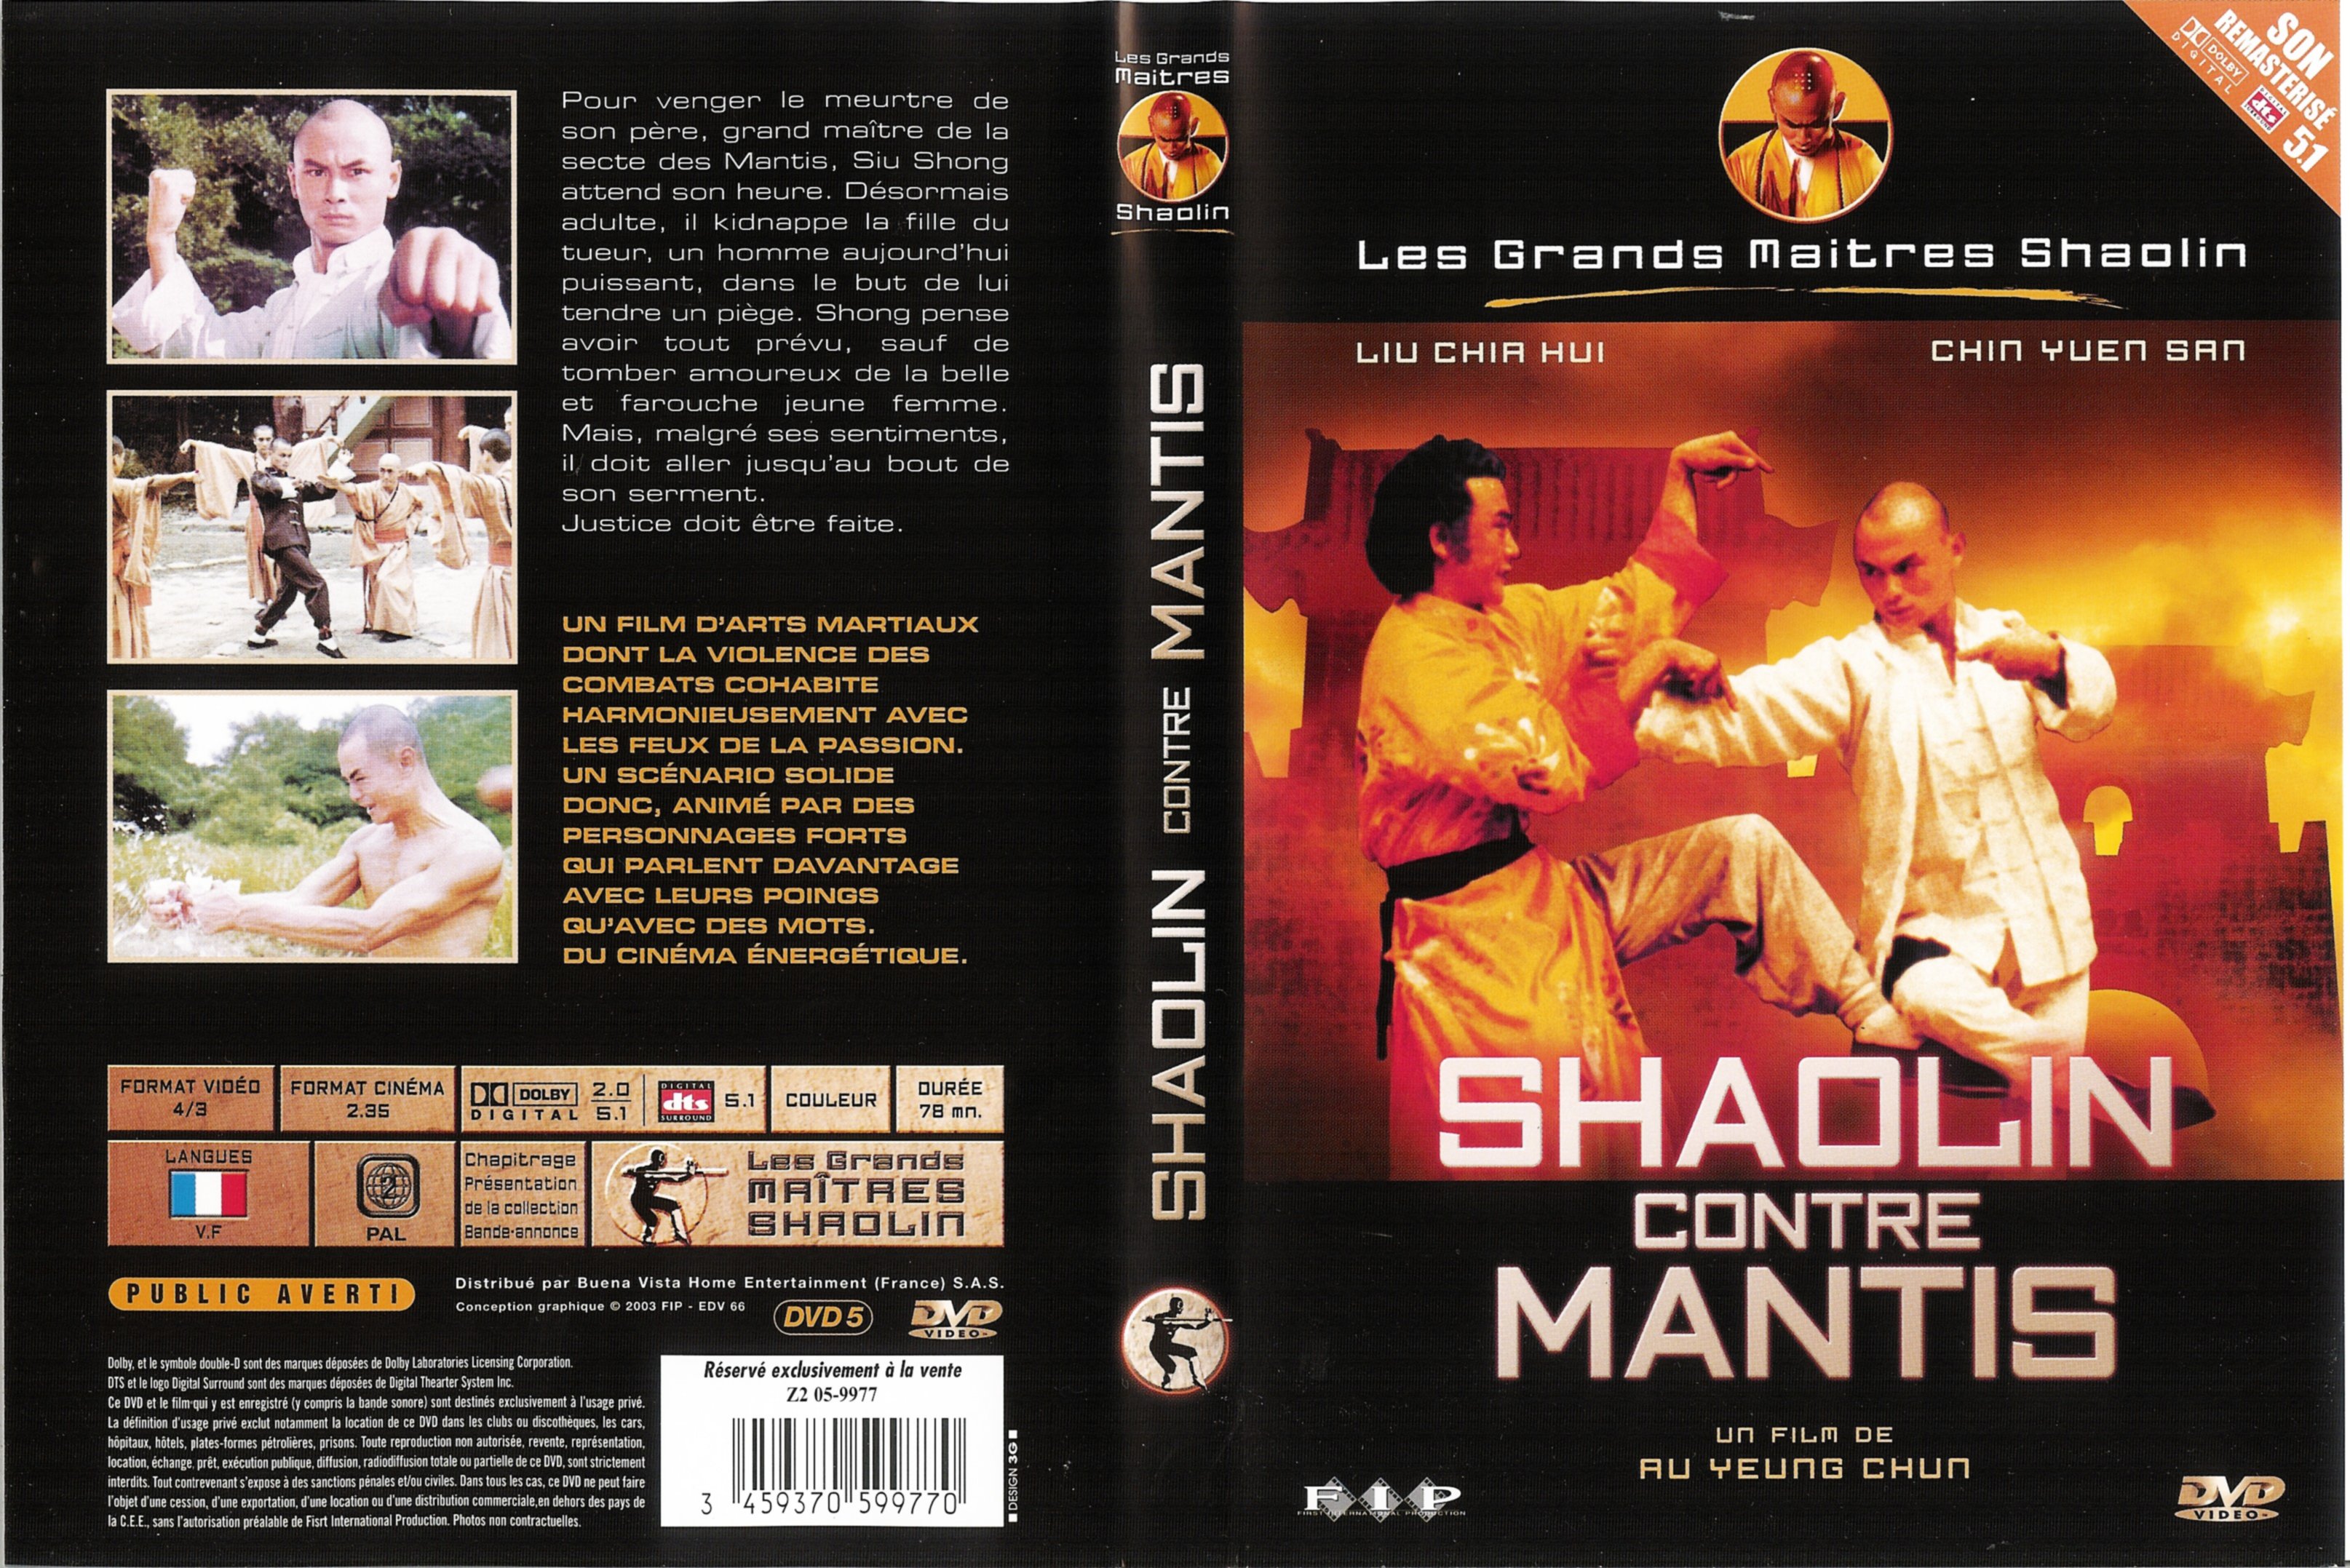 Jaquette DVD Shaolin contre mantis